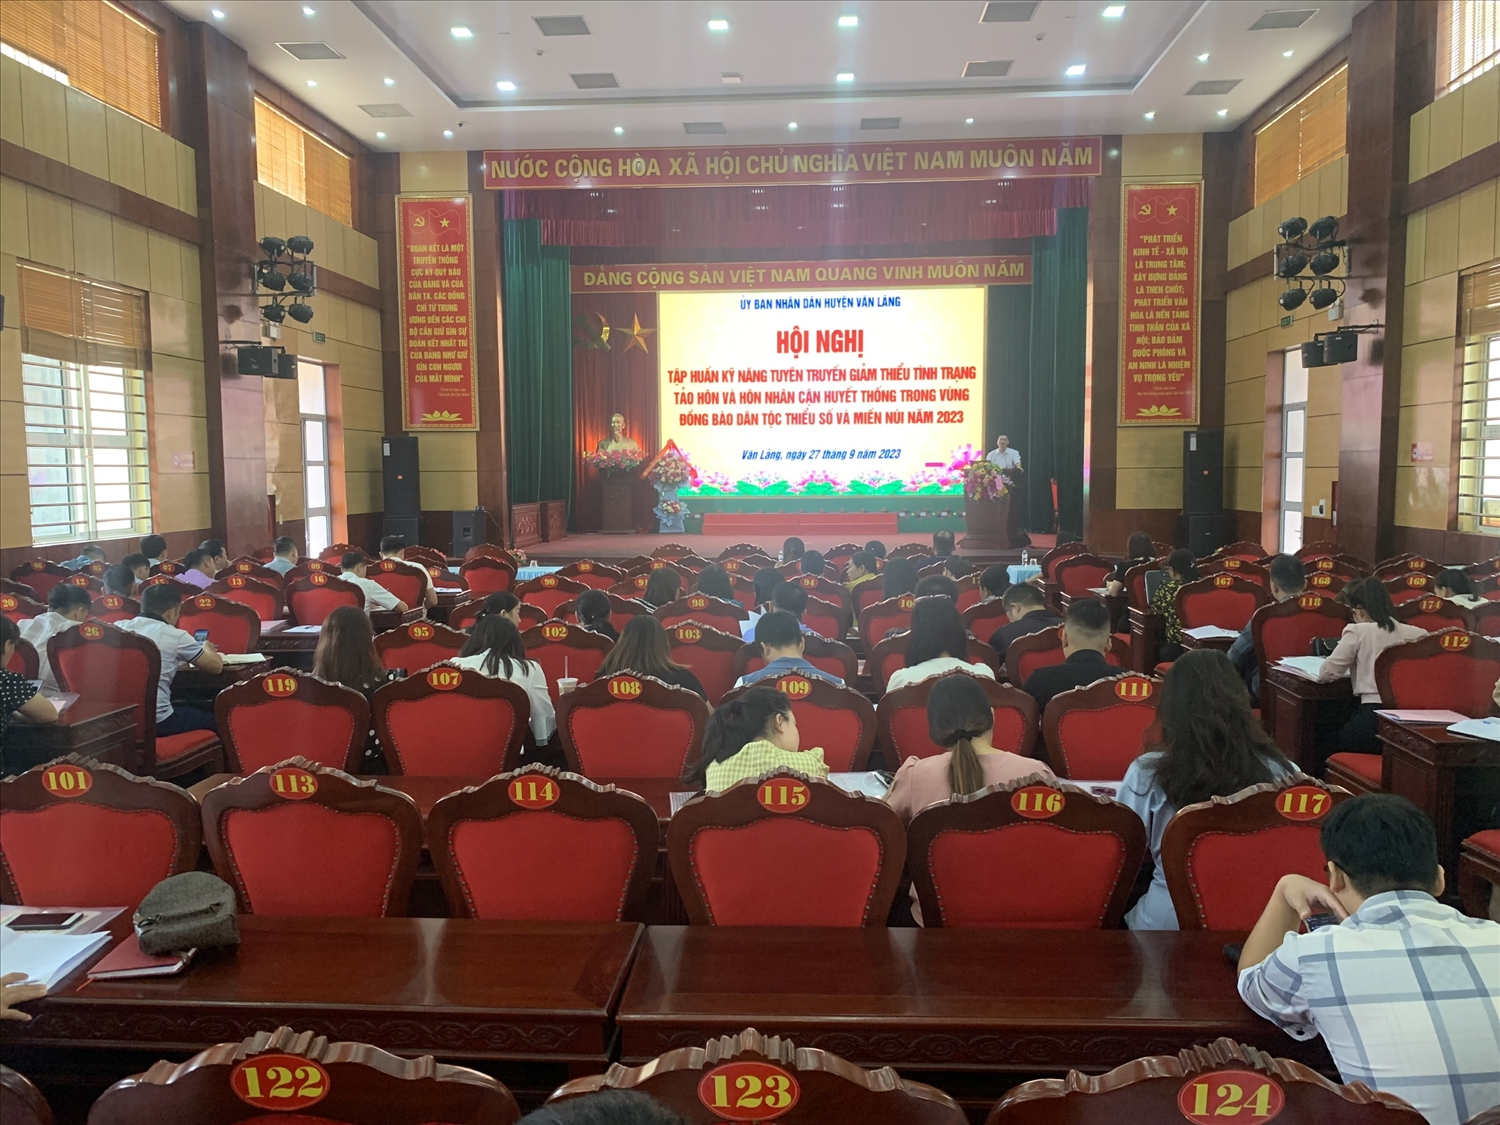 Hội nghị tập huấn kỹ năng tuyên truyền giảm thiểu tình trạng tảo hôn và hôn nhân cận huyết thống trong vùng đồng bào DTTS năm 2023 do UBND huyện Văn Lãng tổ chức.